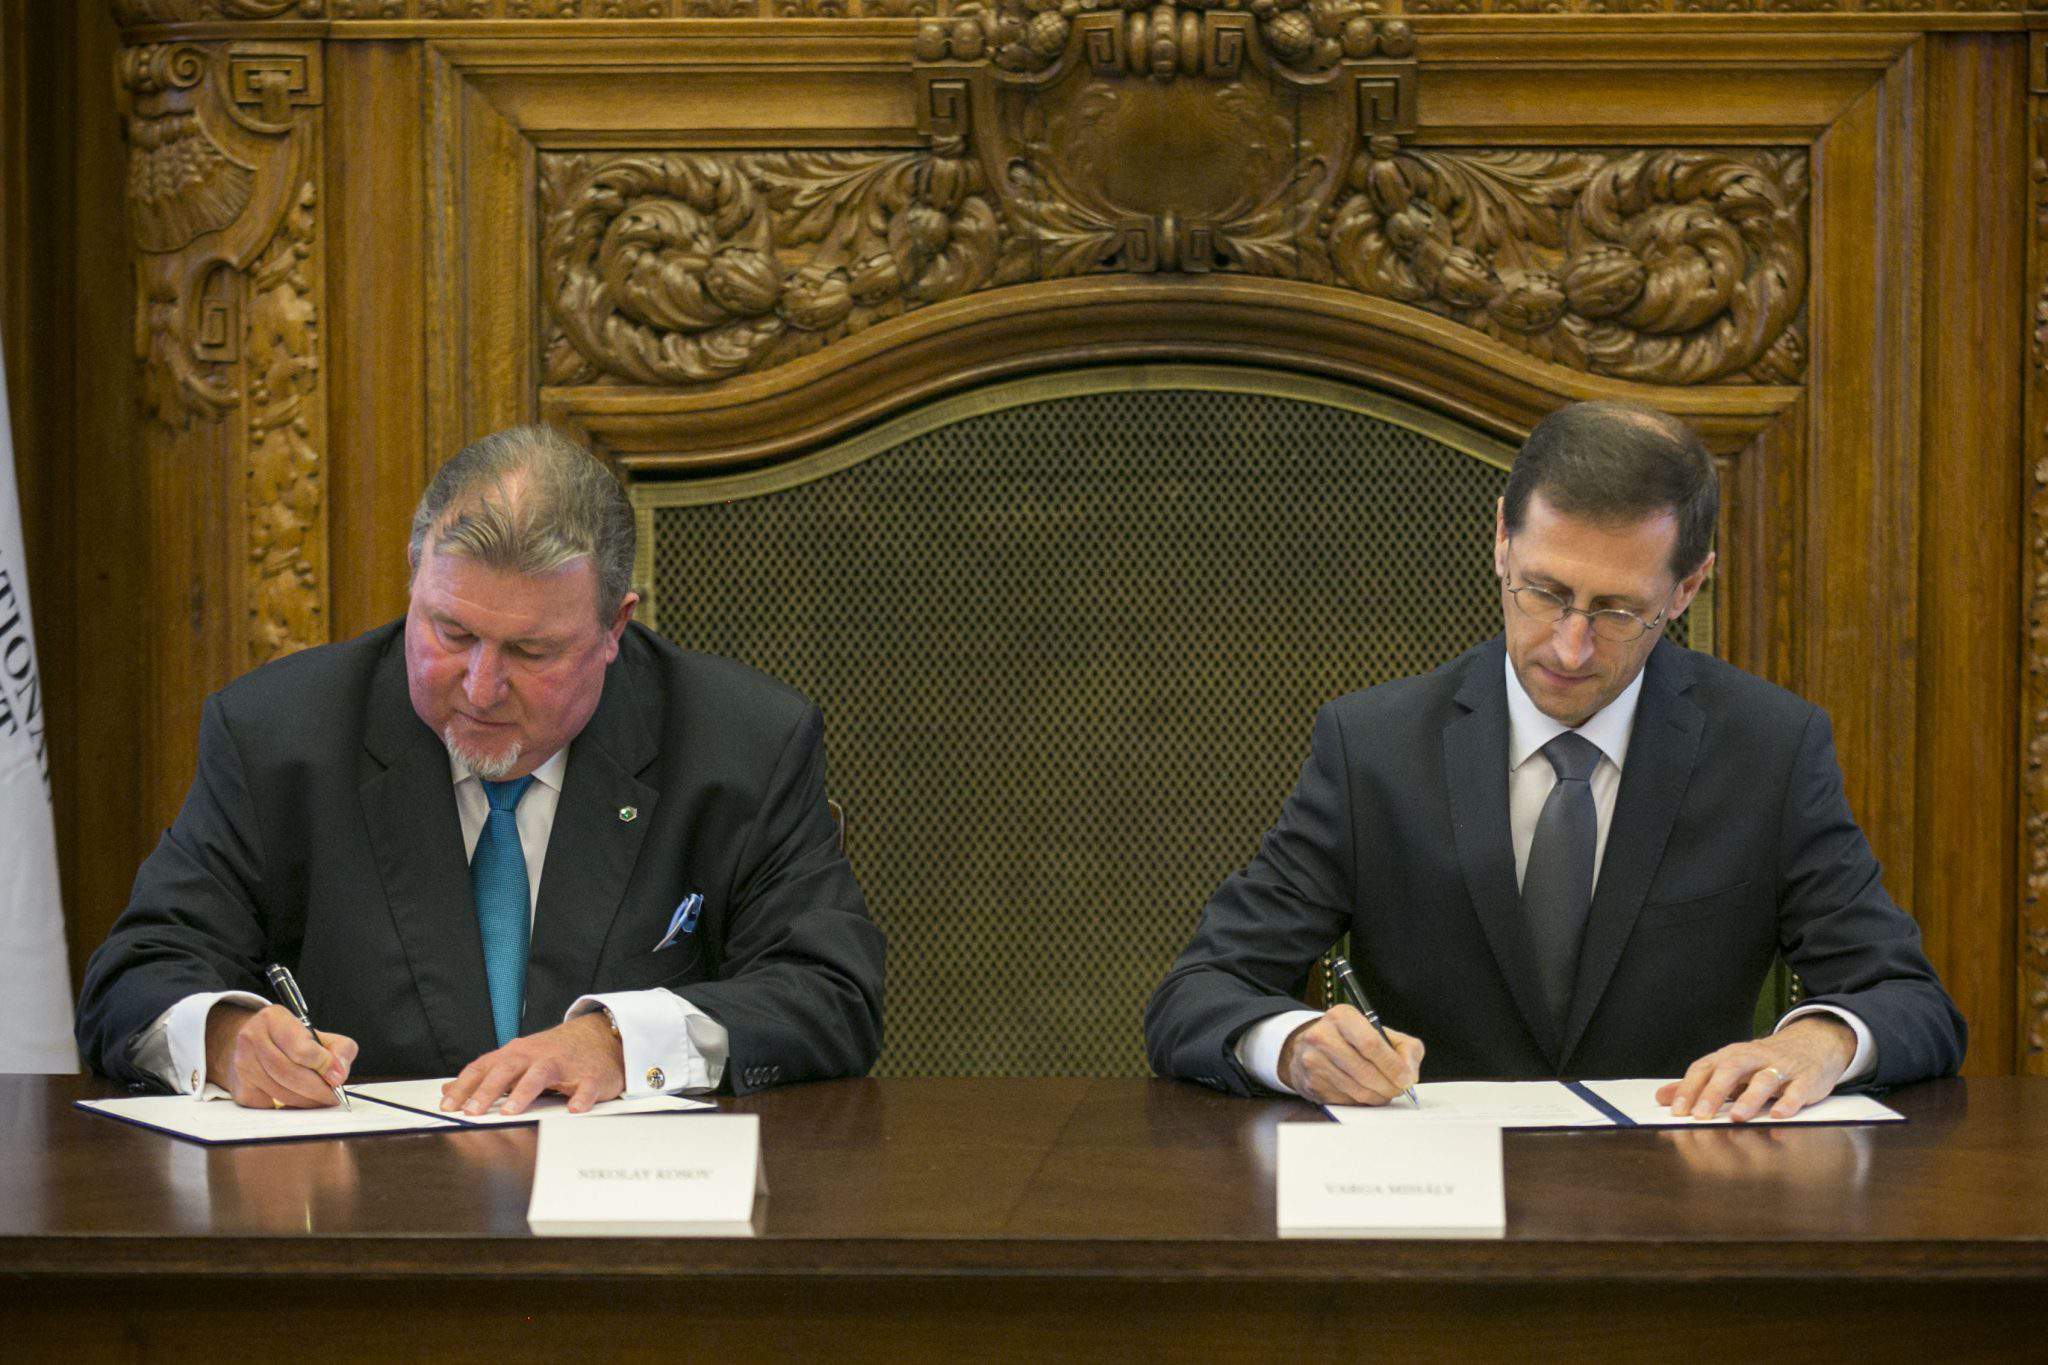 Investicijska banka IIB, Varga početni dogovor o dovođenju regionalnog ureda u Mađarsku